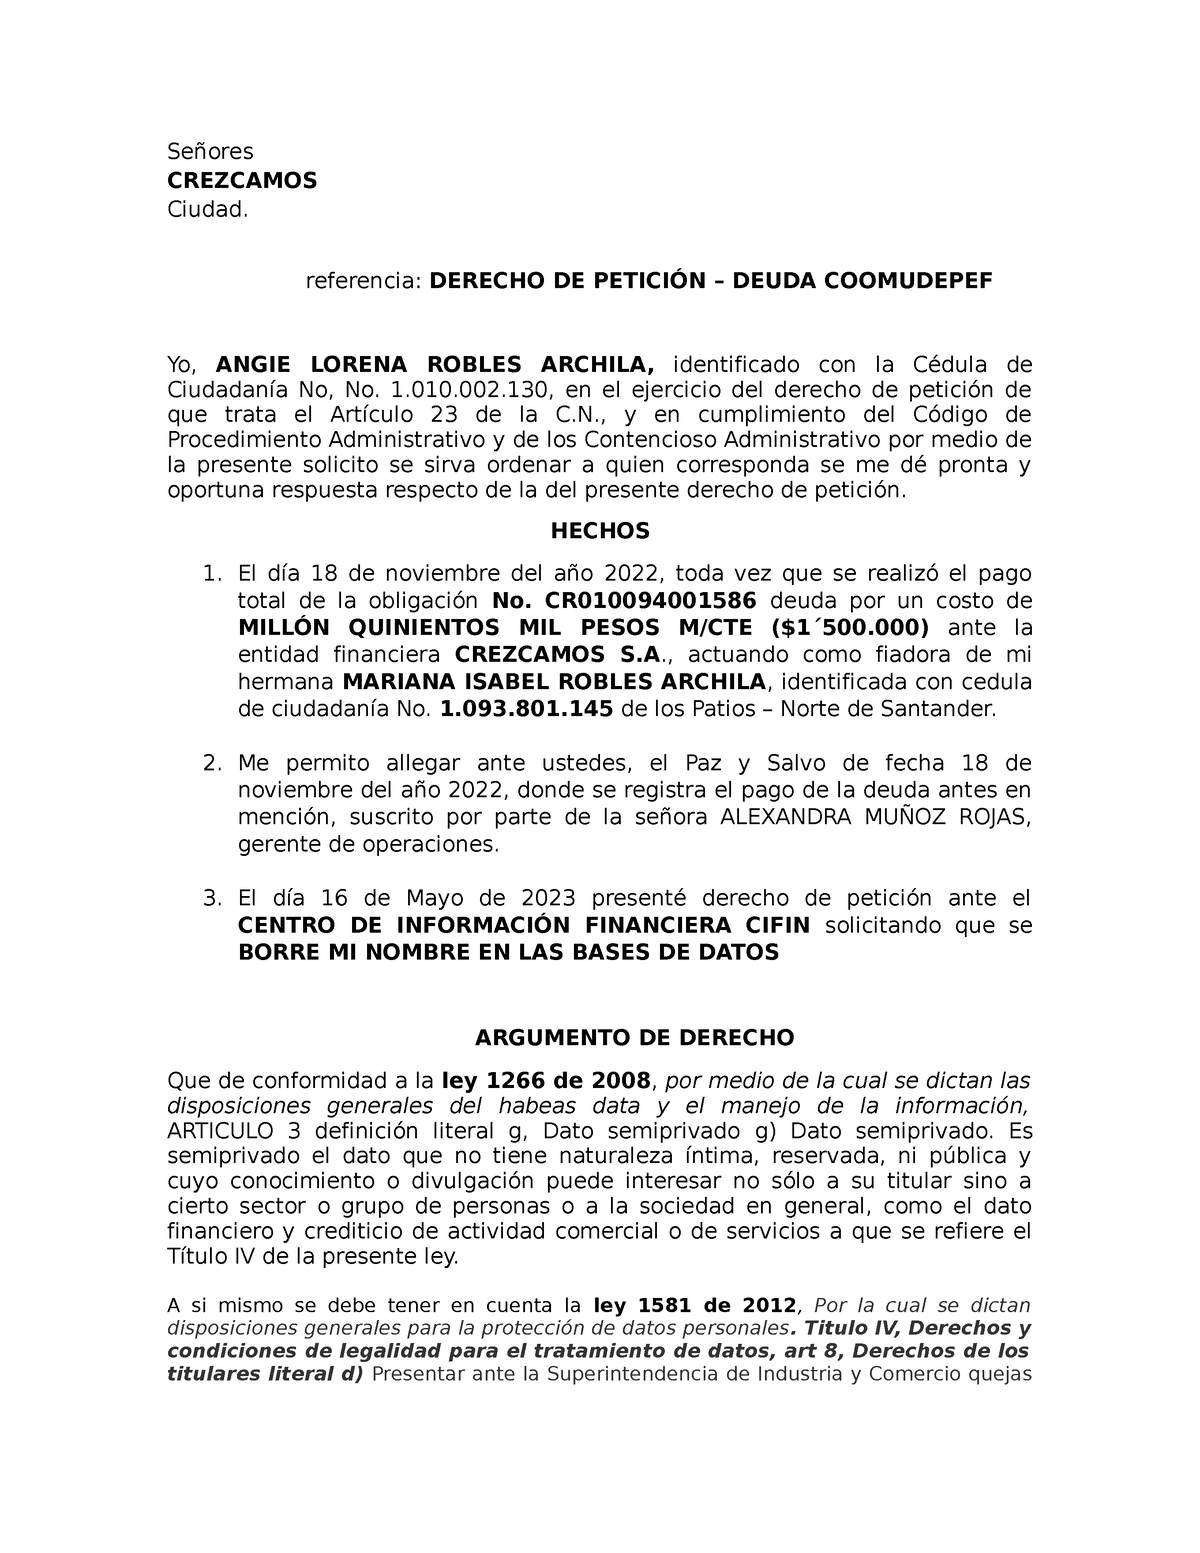 Derecho de petición de Angie Lorena Robles Archila (habeas data ...